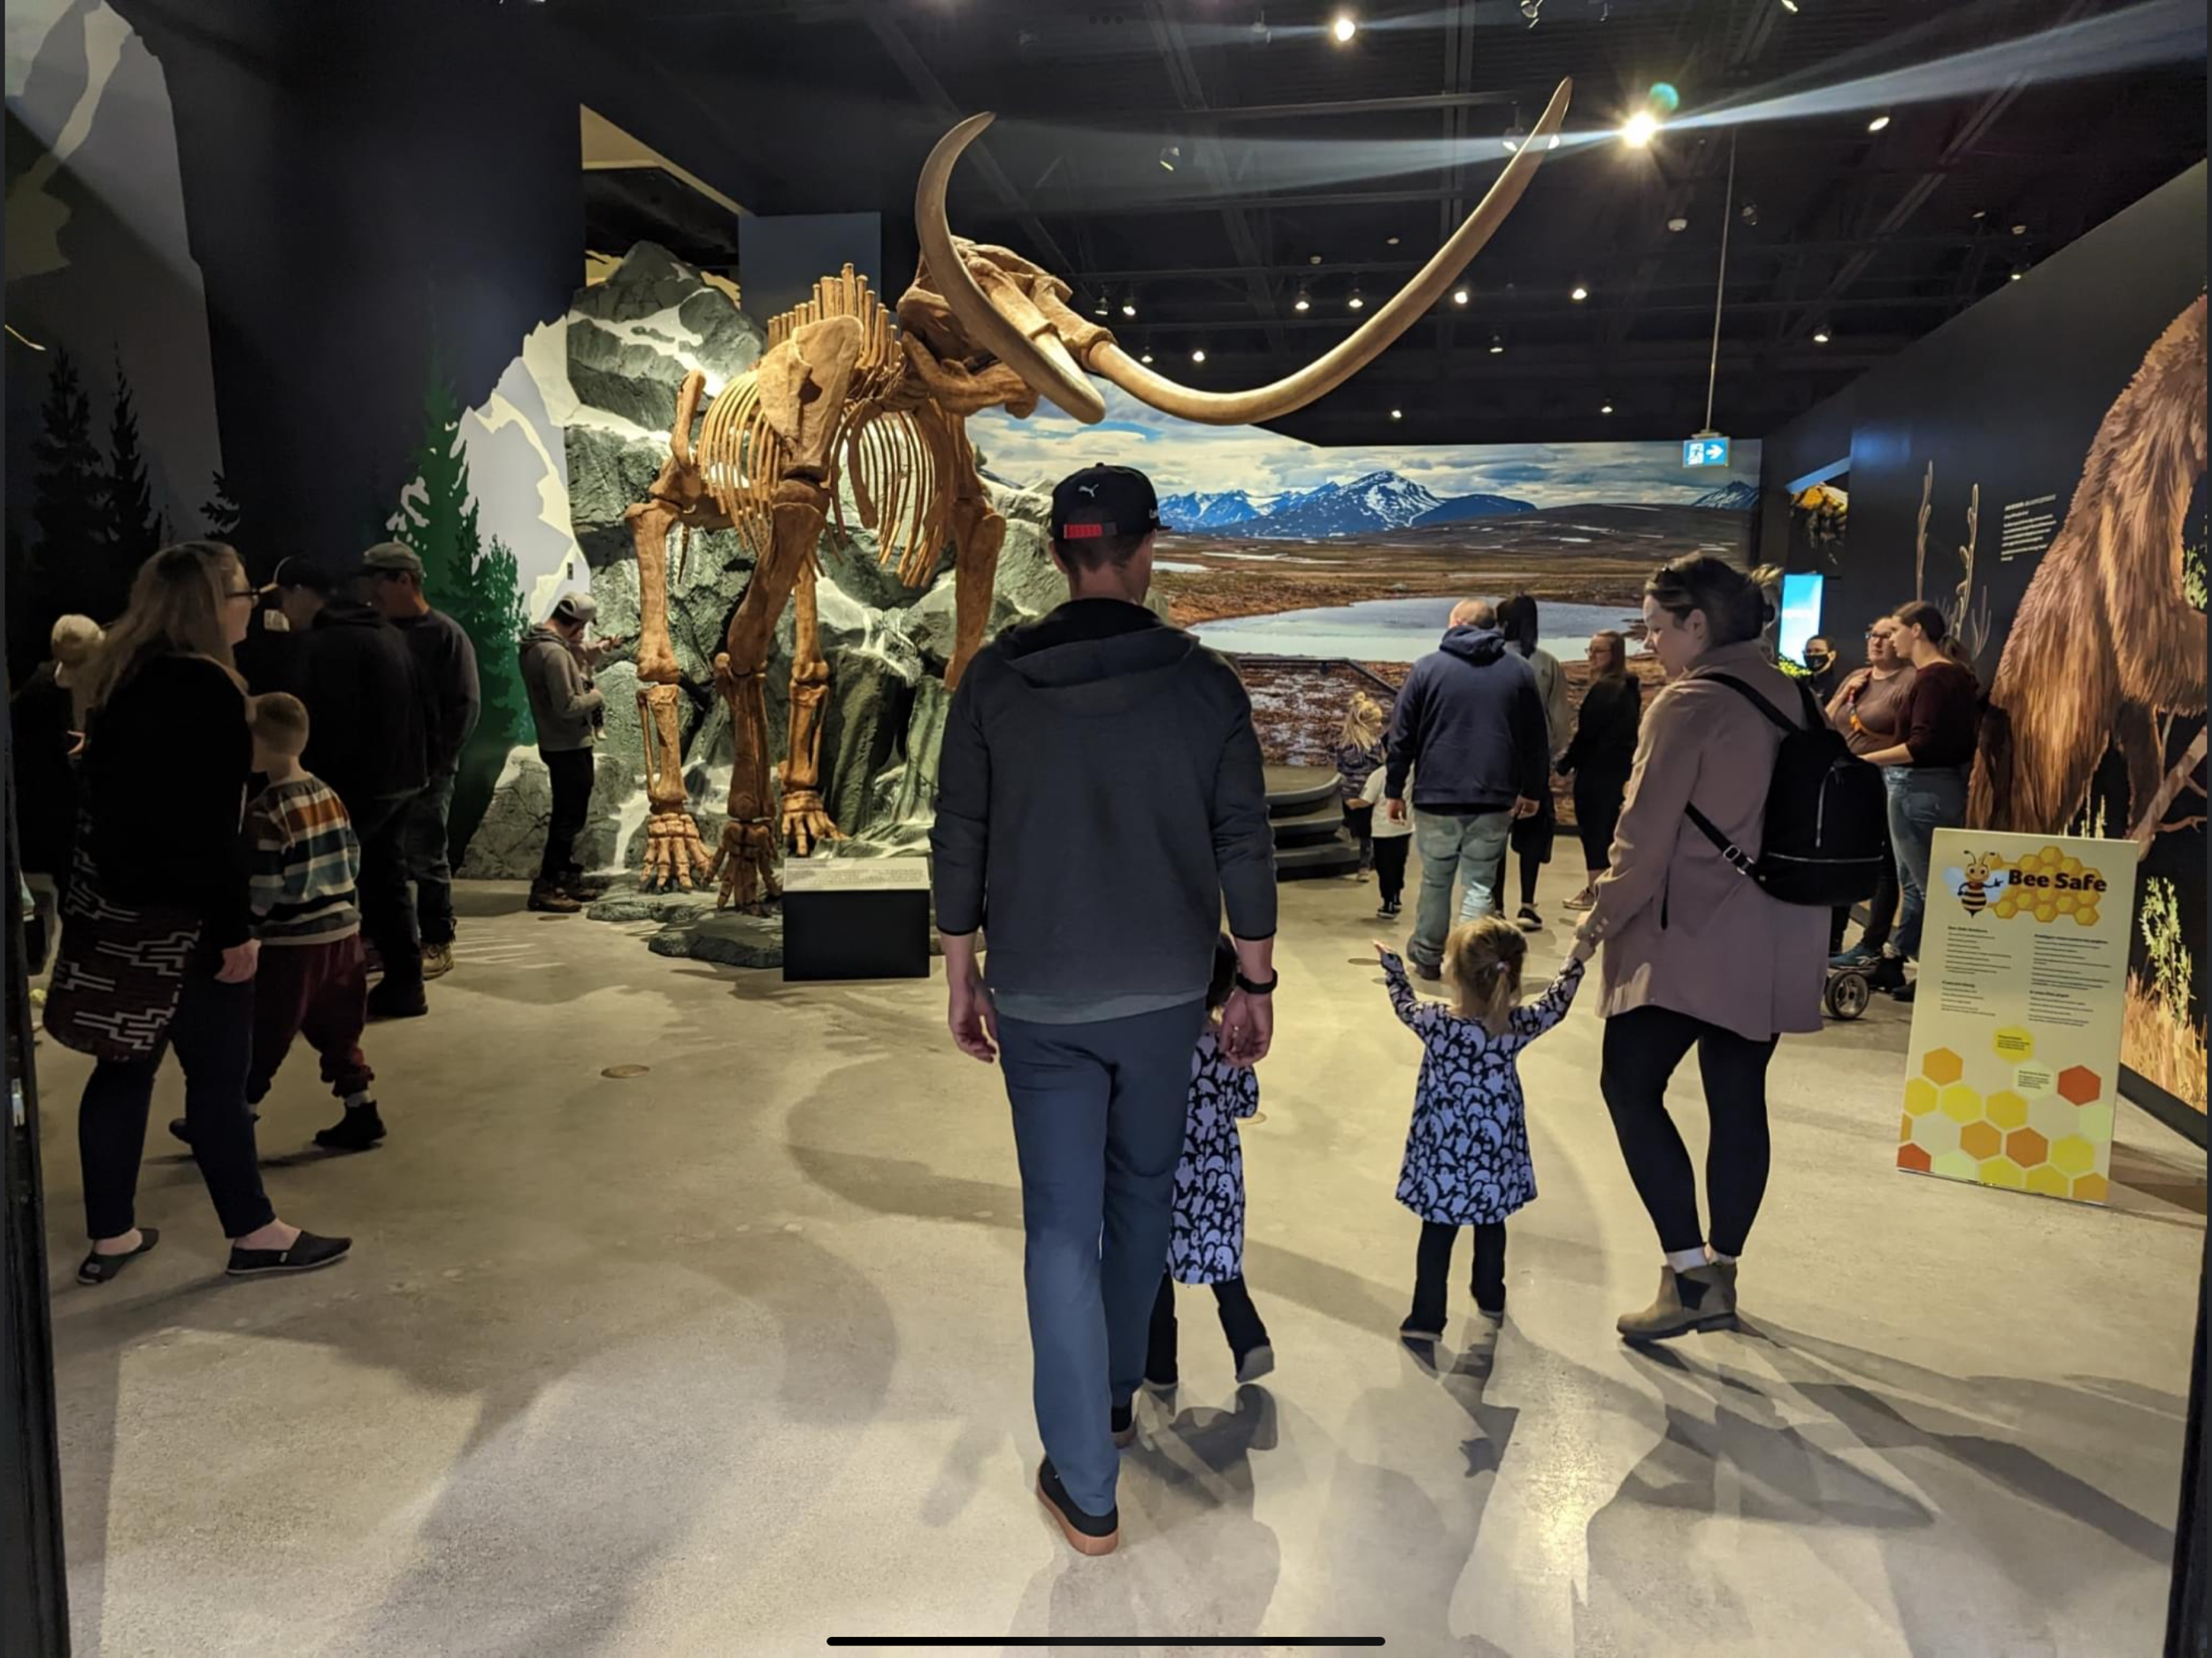 Mastodon ice age exhibit